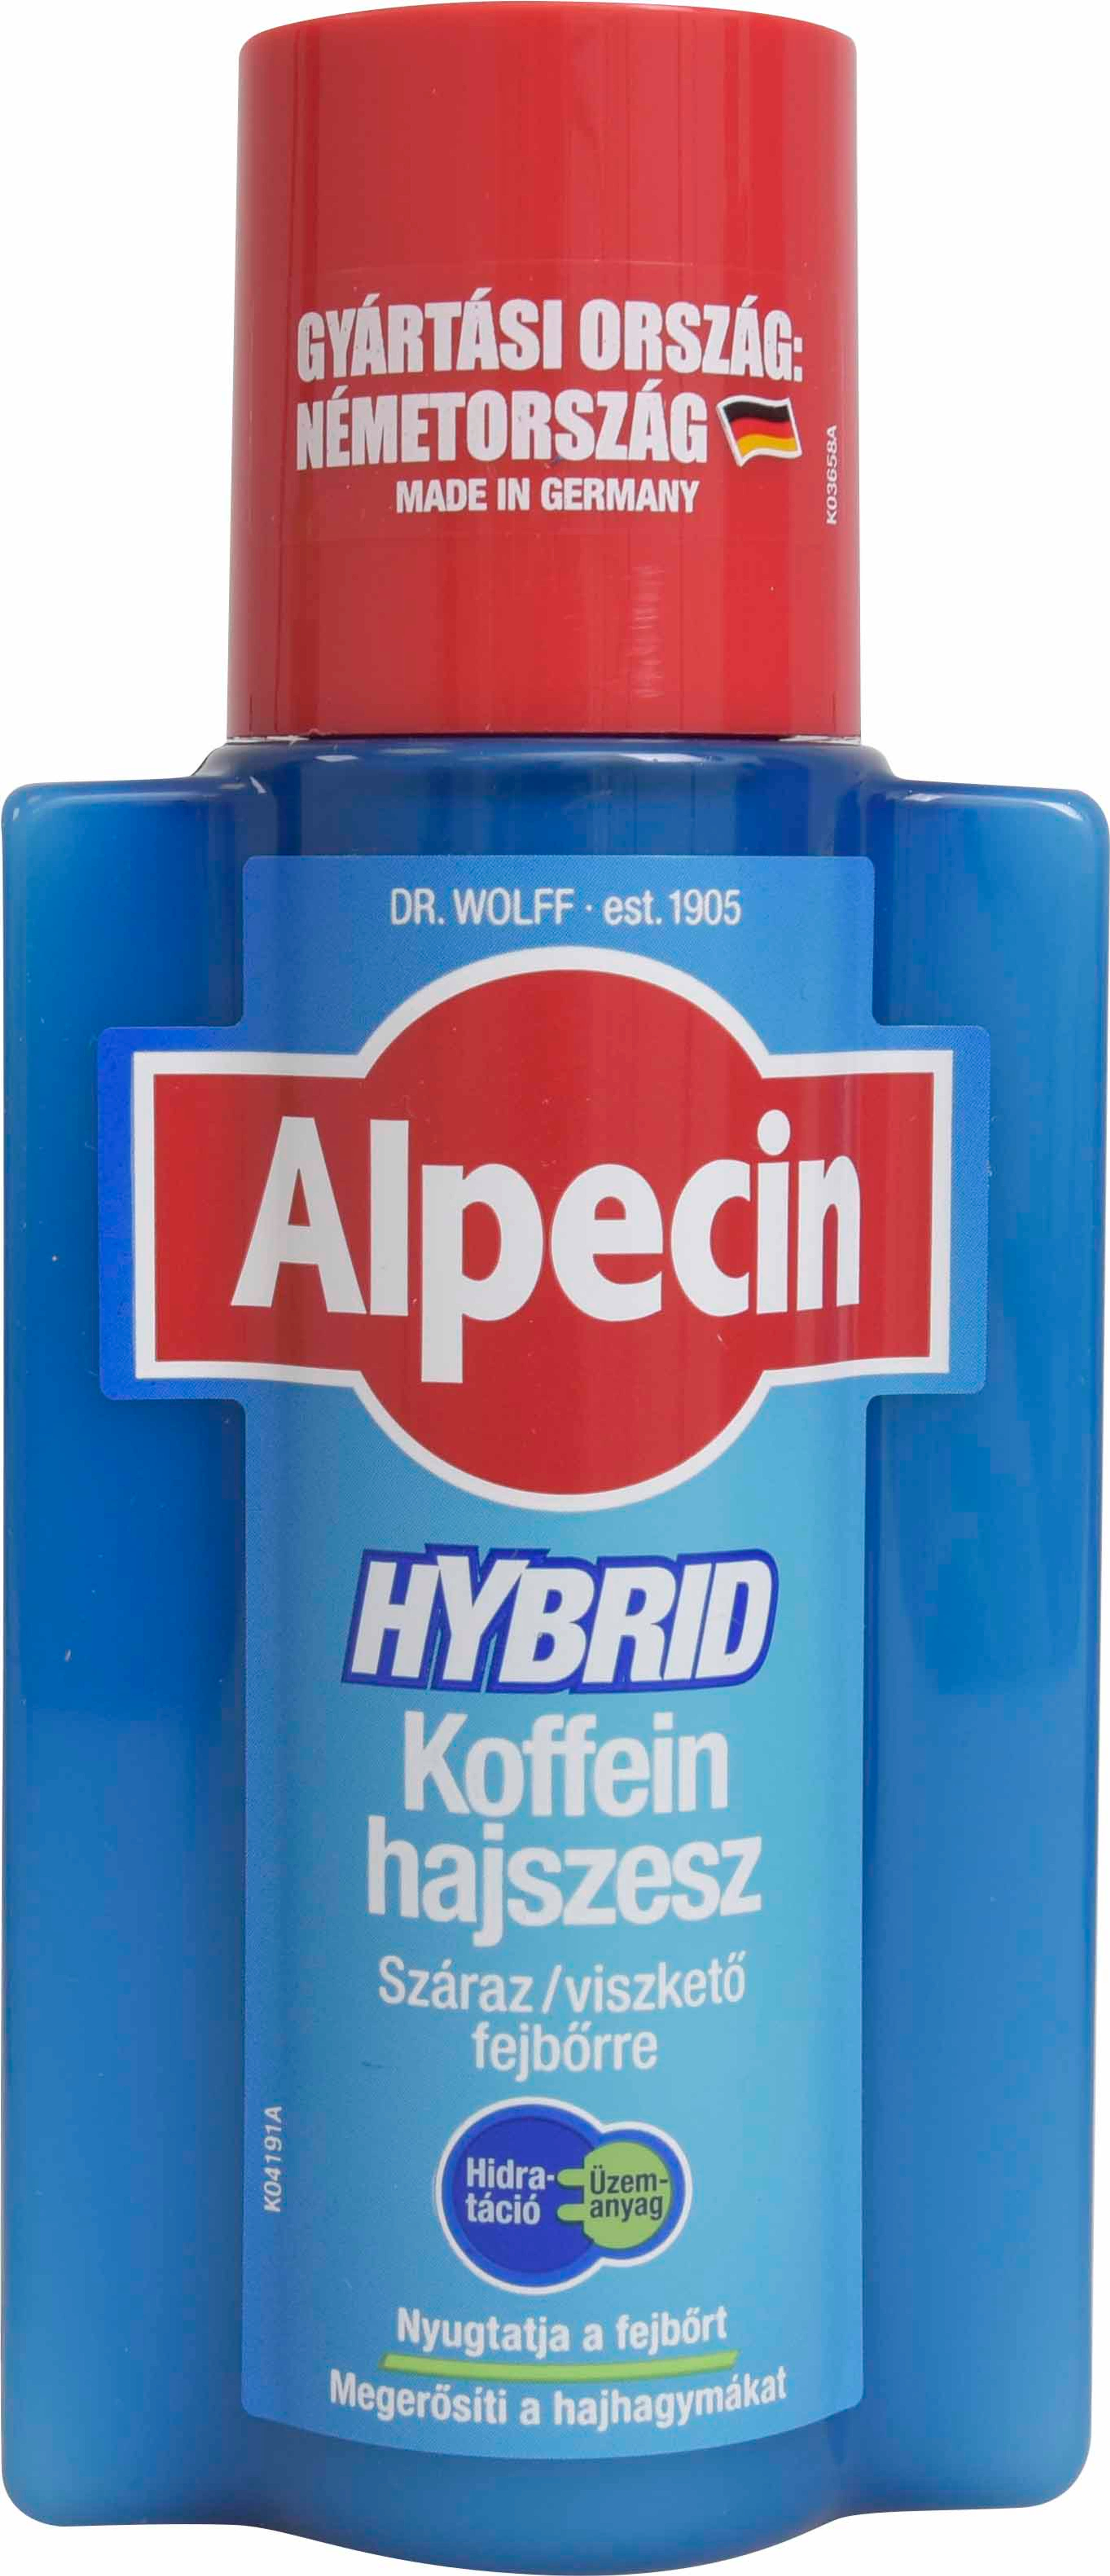 Alpecin hybrid koffein hajszesz - 200 ml-1